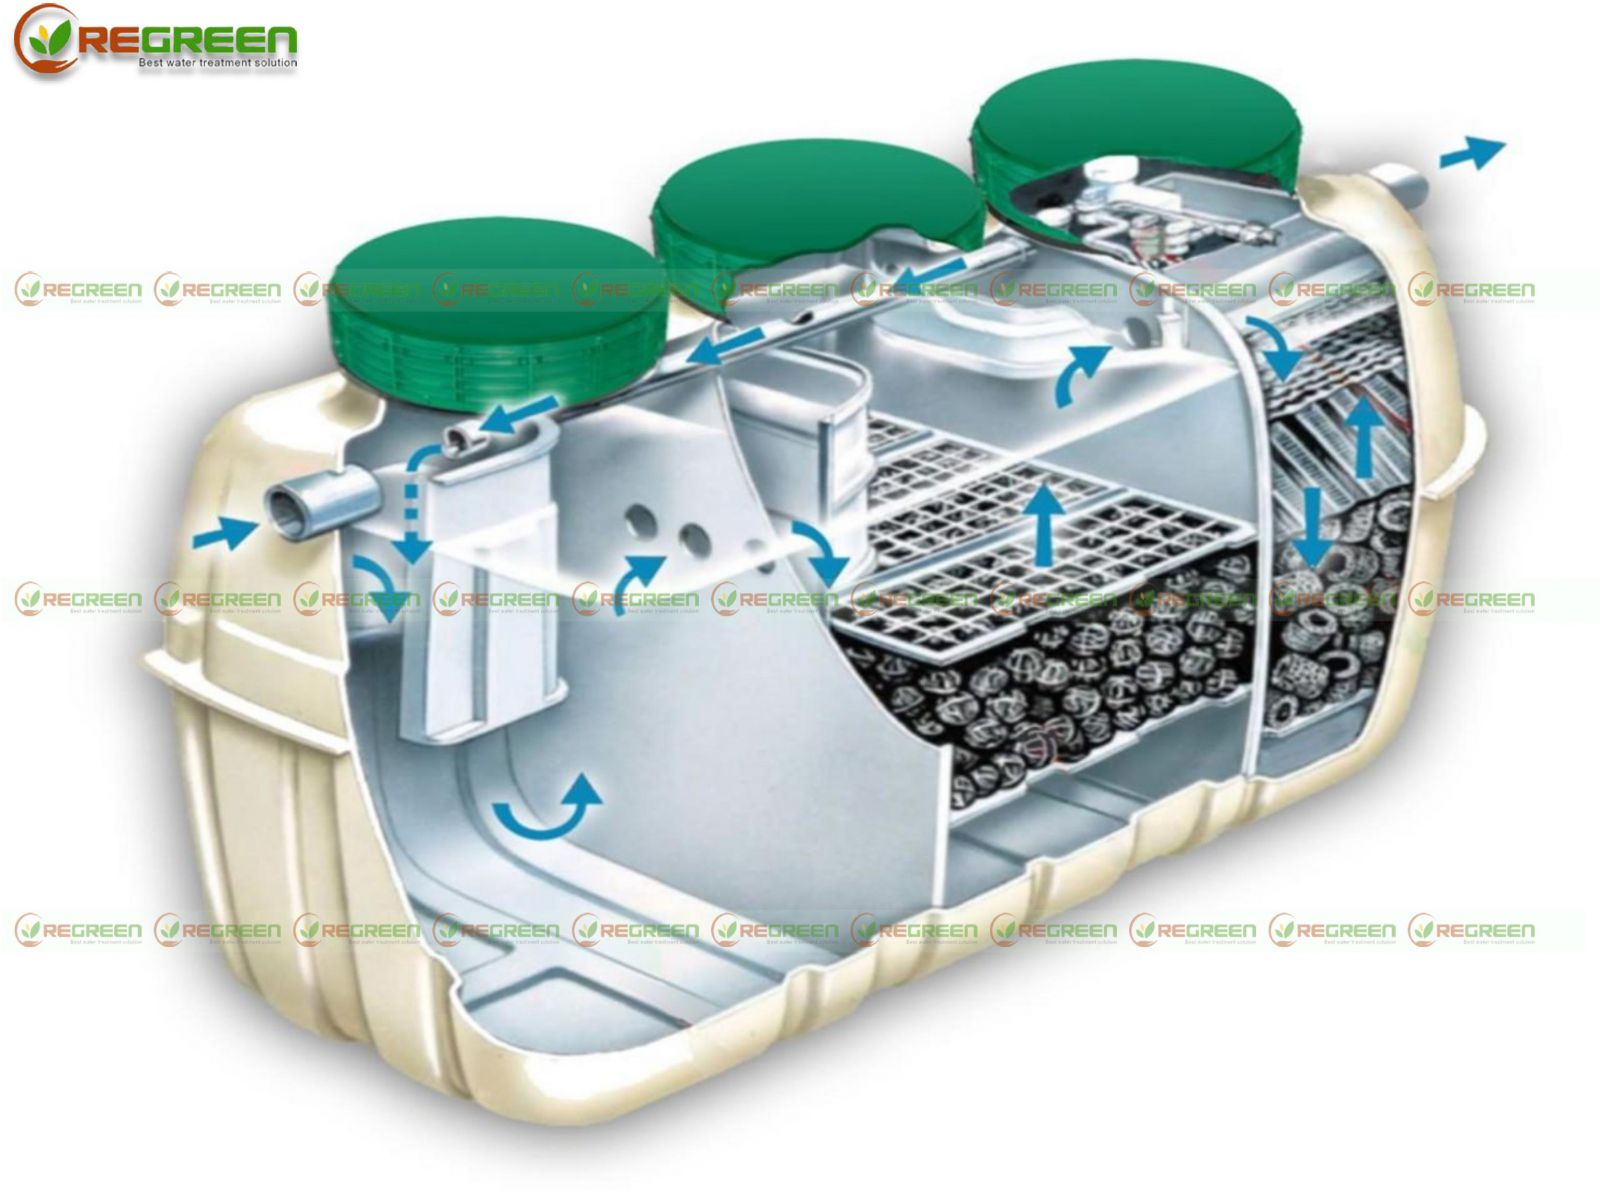 REGREEN - Đơn vị lắp đặt module hệ thống xử lý nước thải 5m3 đạt tiêu chuẩn chất lượng, giá rẻ 